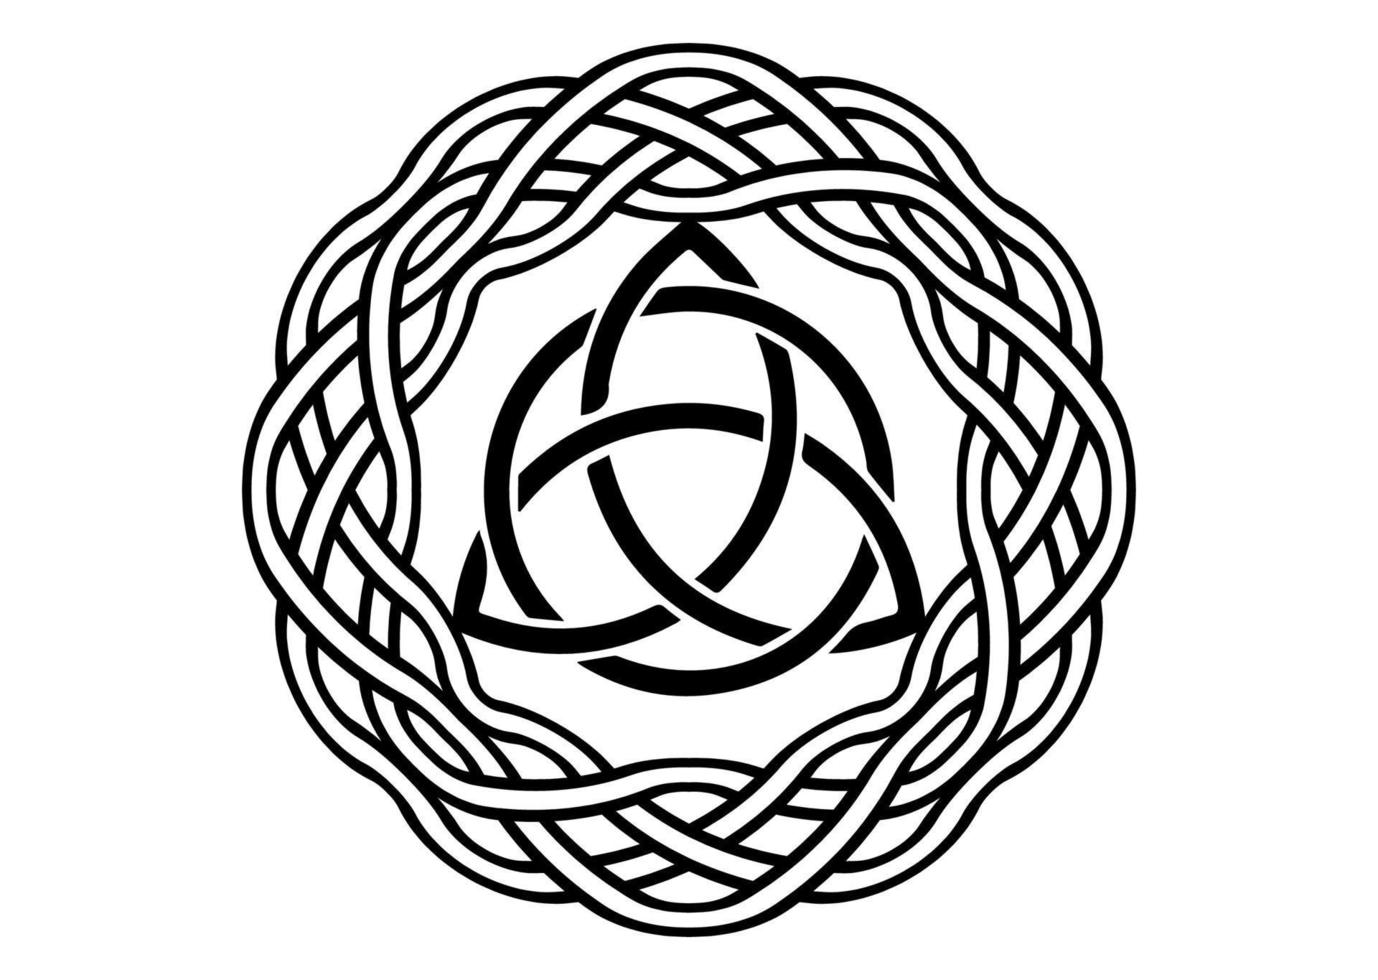 triquetra, noeud de la trinité, symbole wiccan de protection. ensemble de noeud de trinité celtique noir de vecteur isolé sur fond blanc. logo cercle symbole de divination wiccan, anciens symboles occultes de tatouage